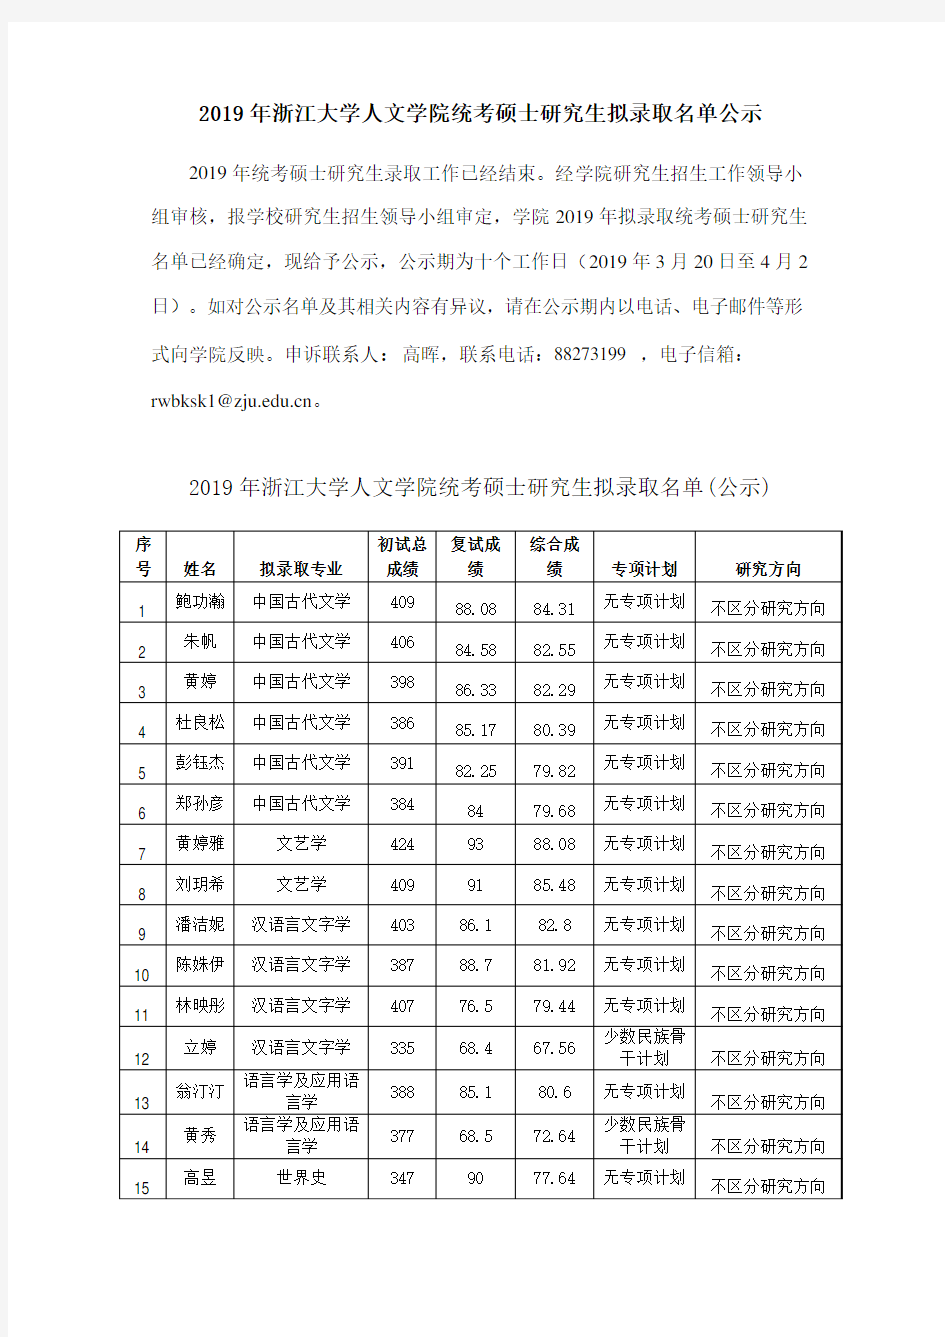 2019 年浙江大学人文学院统考硕士研究生拟录取名单公示